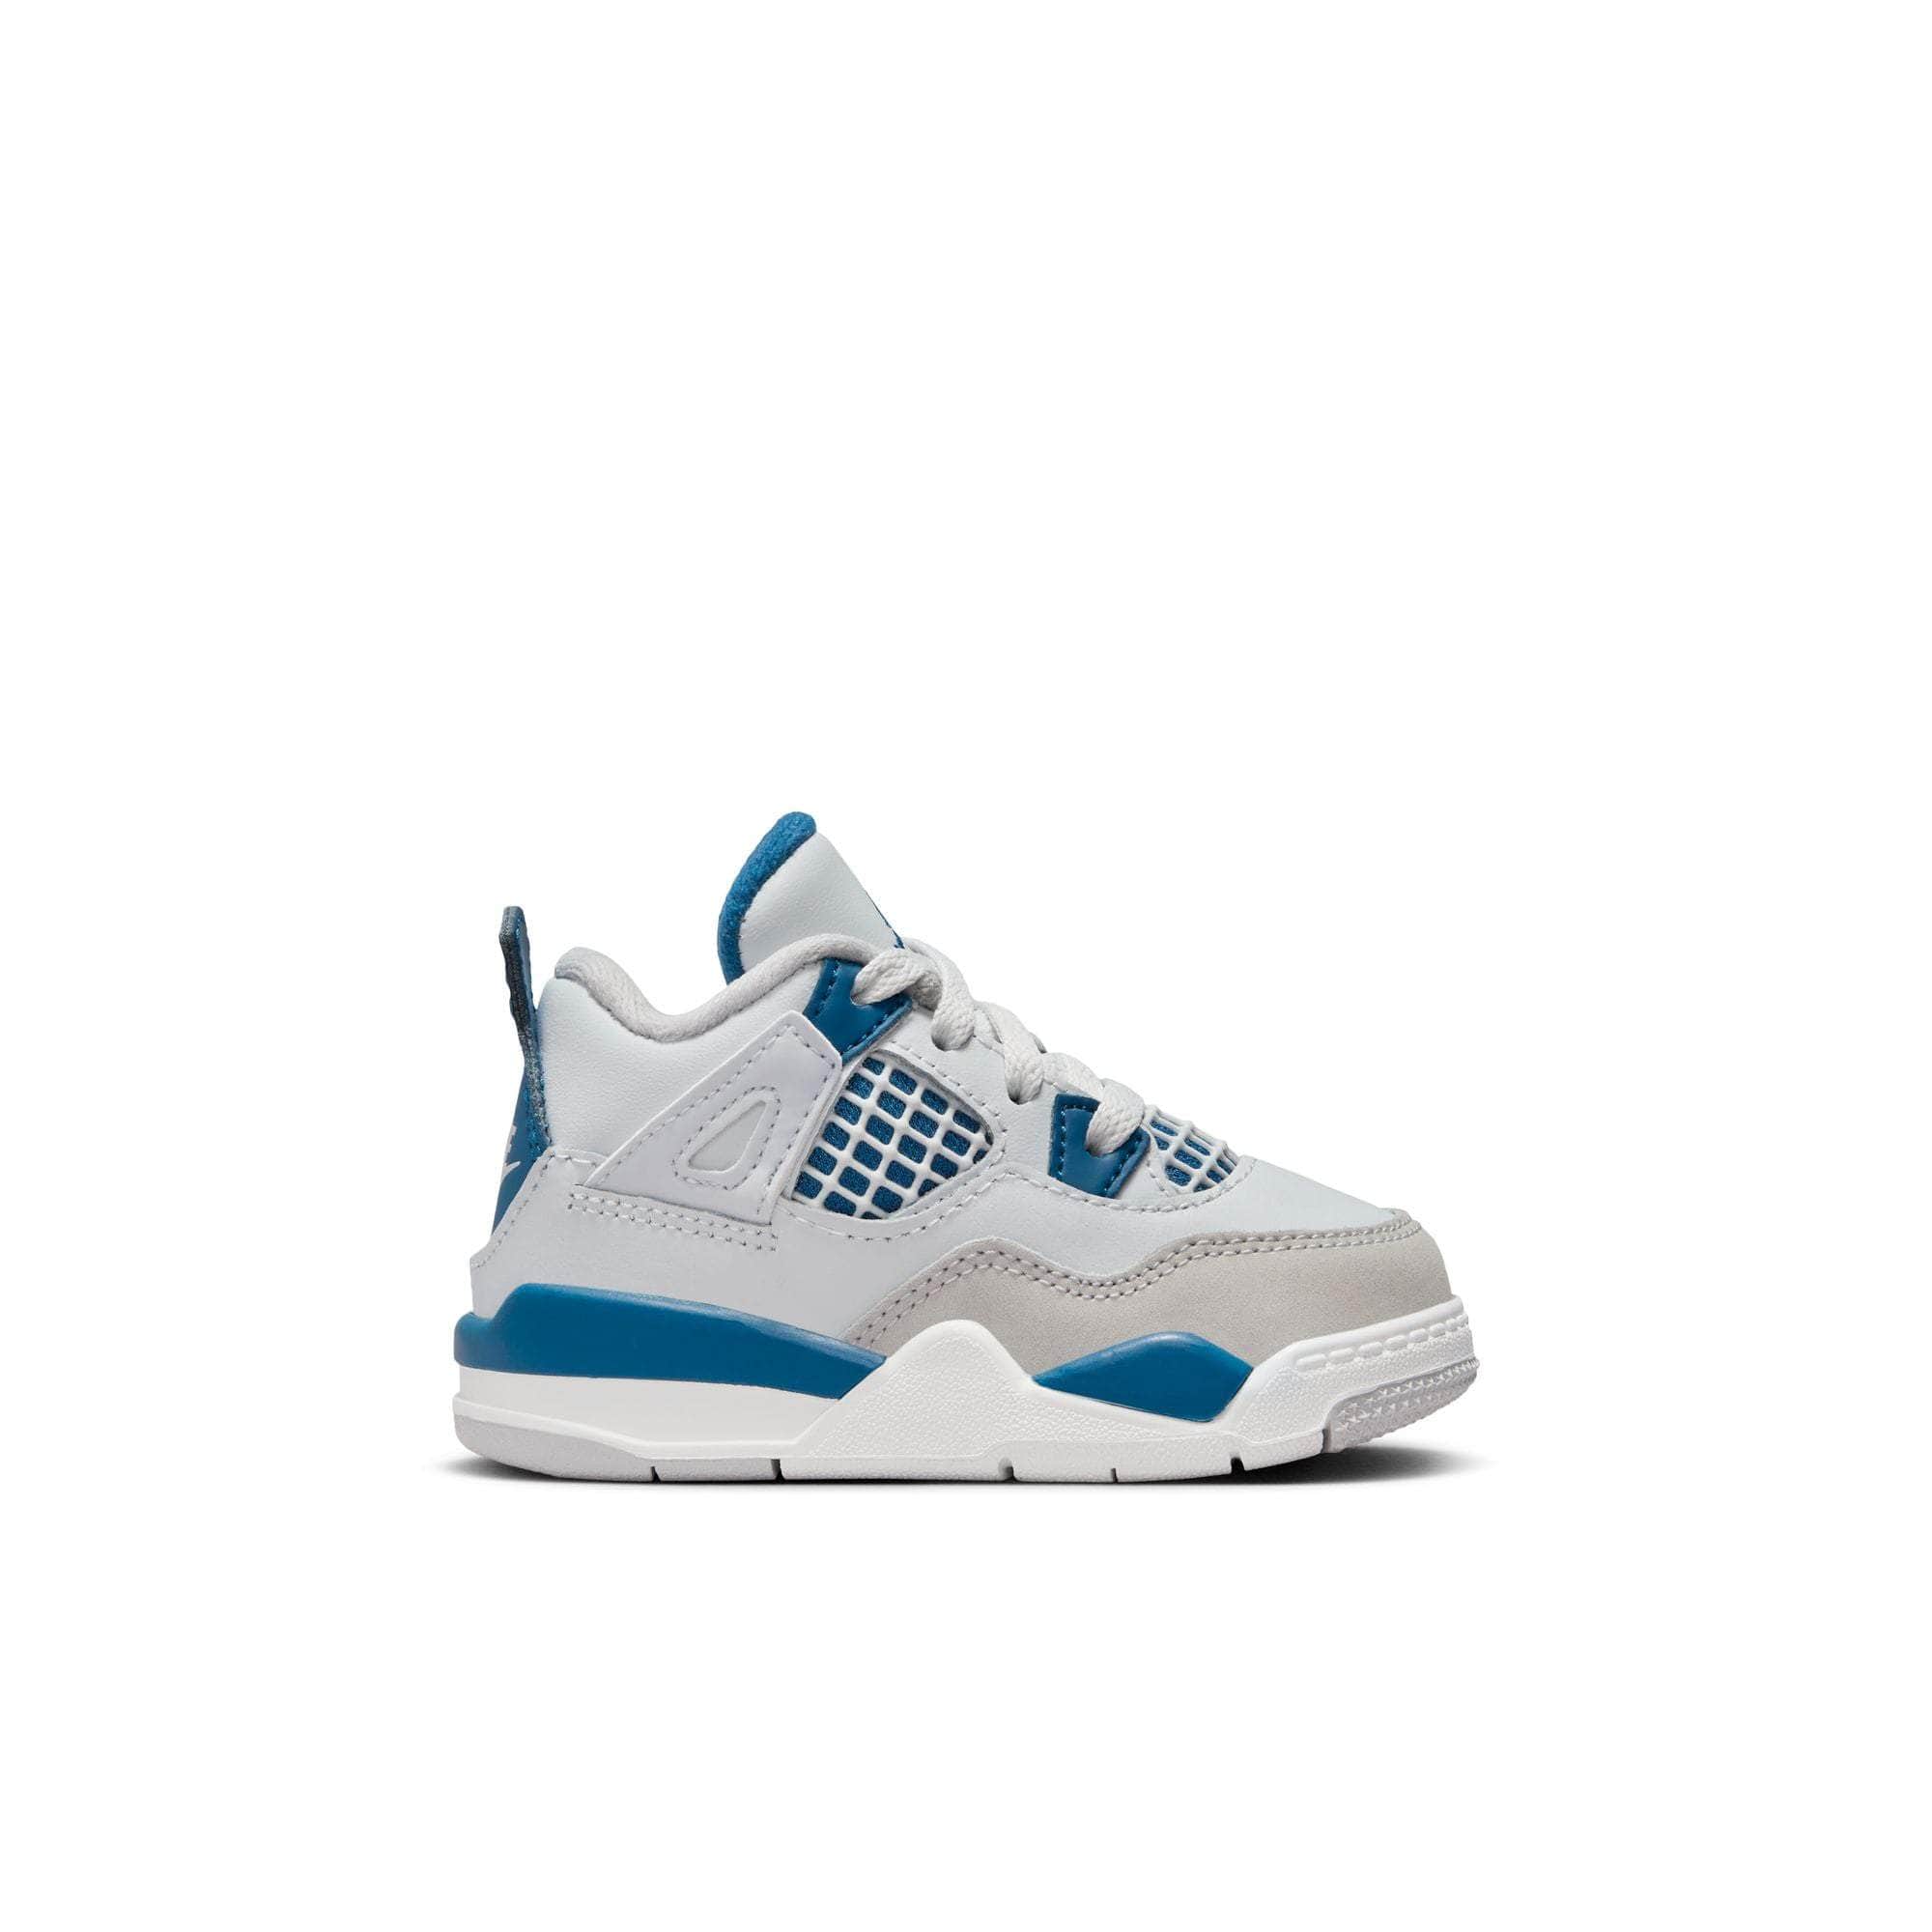 Air Jordan Footwear Air Jordan 4 Retro "Military Blue" - Toddler's TD